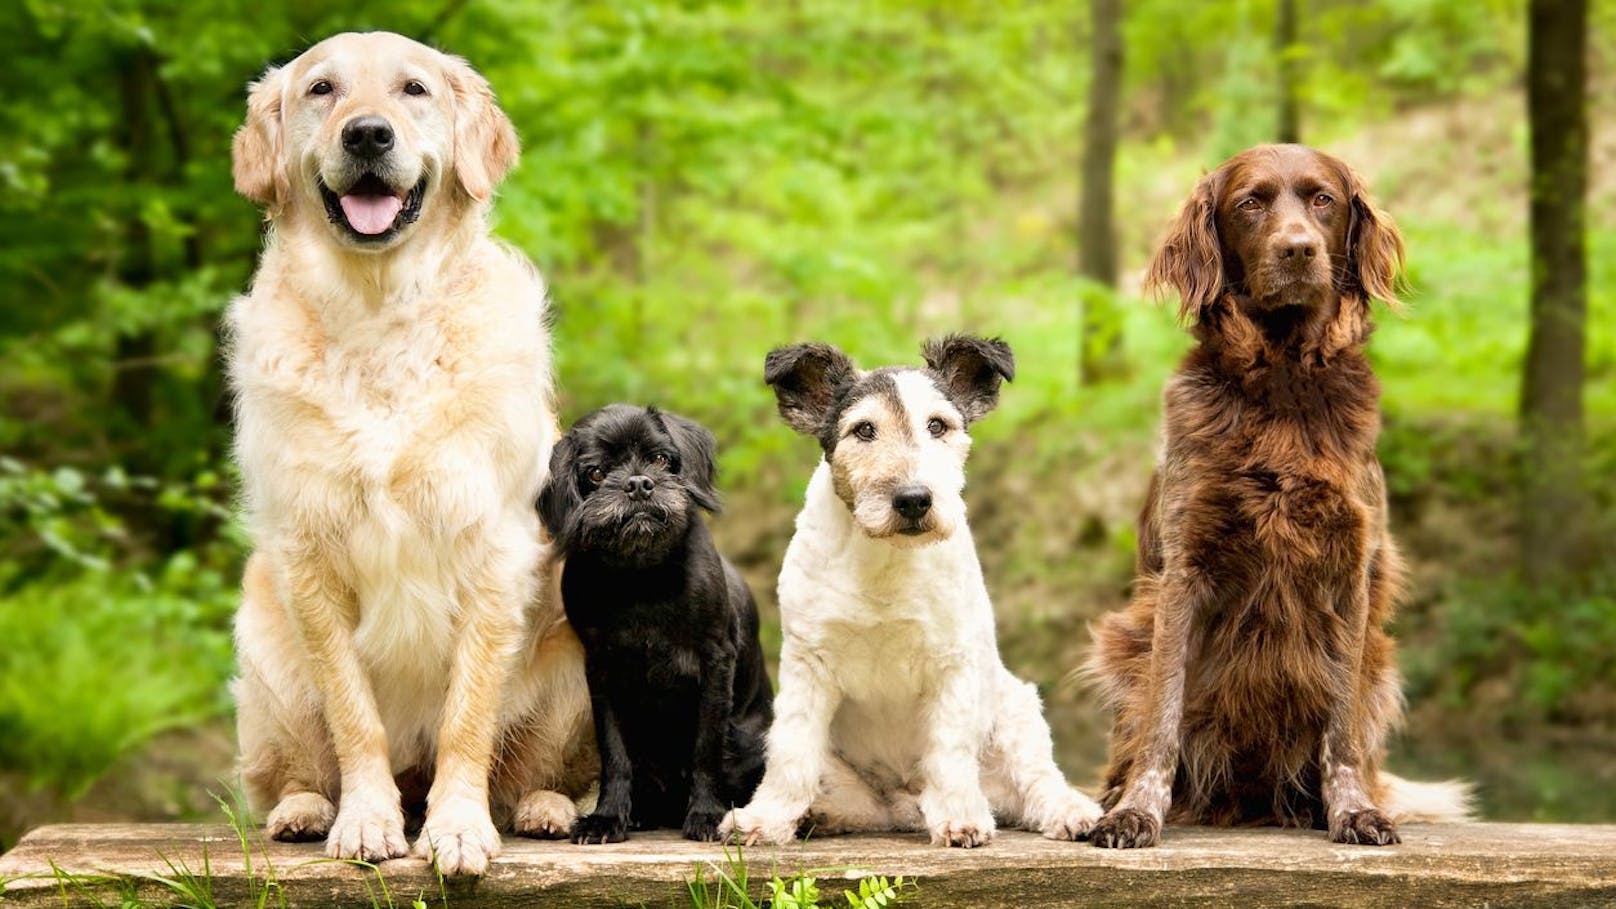 "Entwurf zum Hundehaltegesetz großteils ungeeignet"